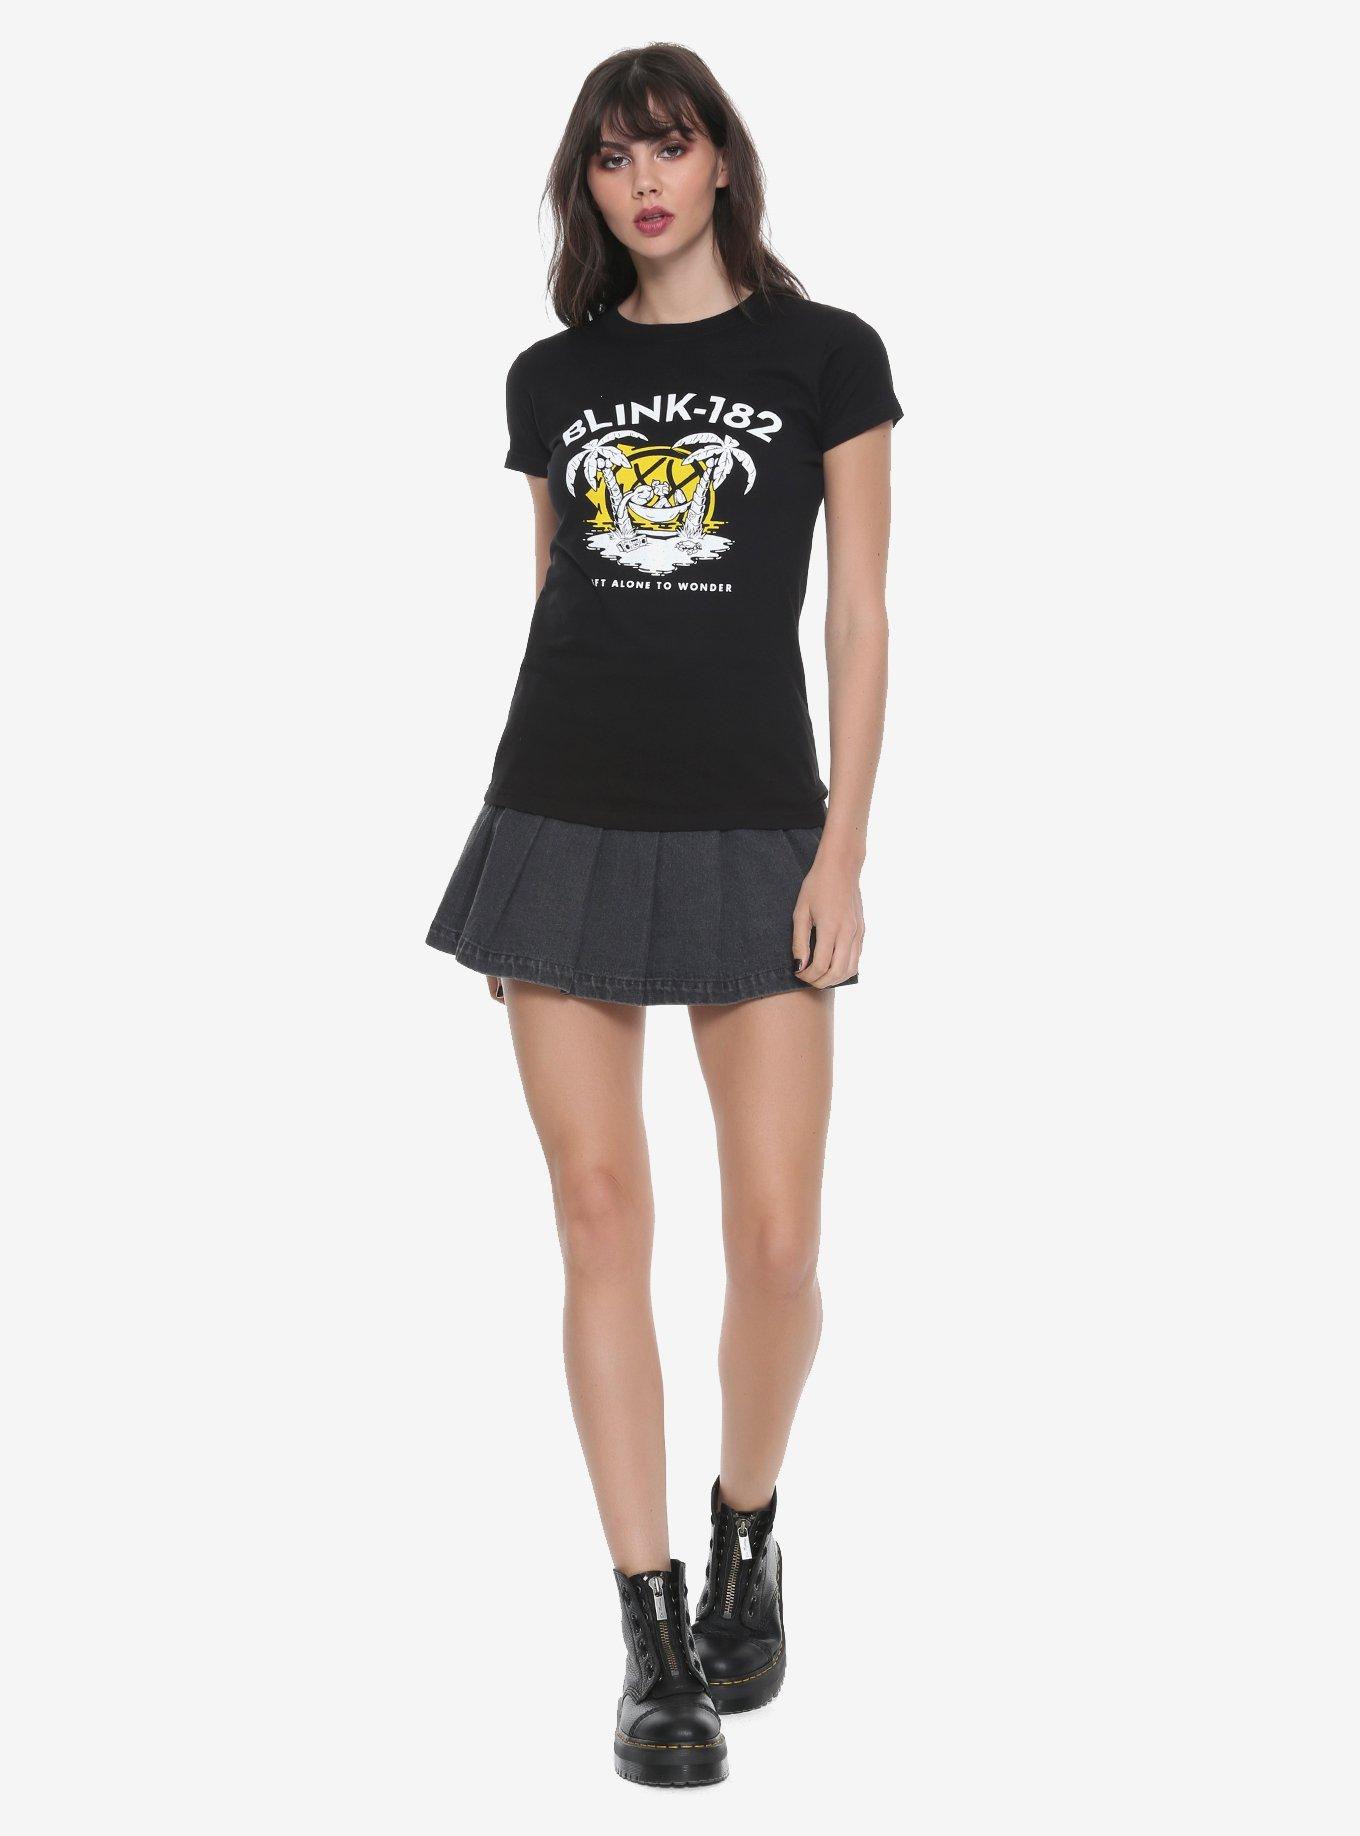 Blink-182 Left Alone Island Girls T-Shirt, , alternate